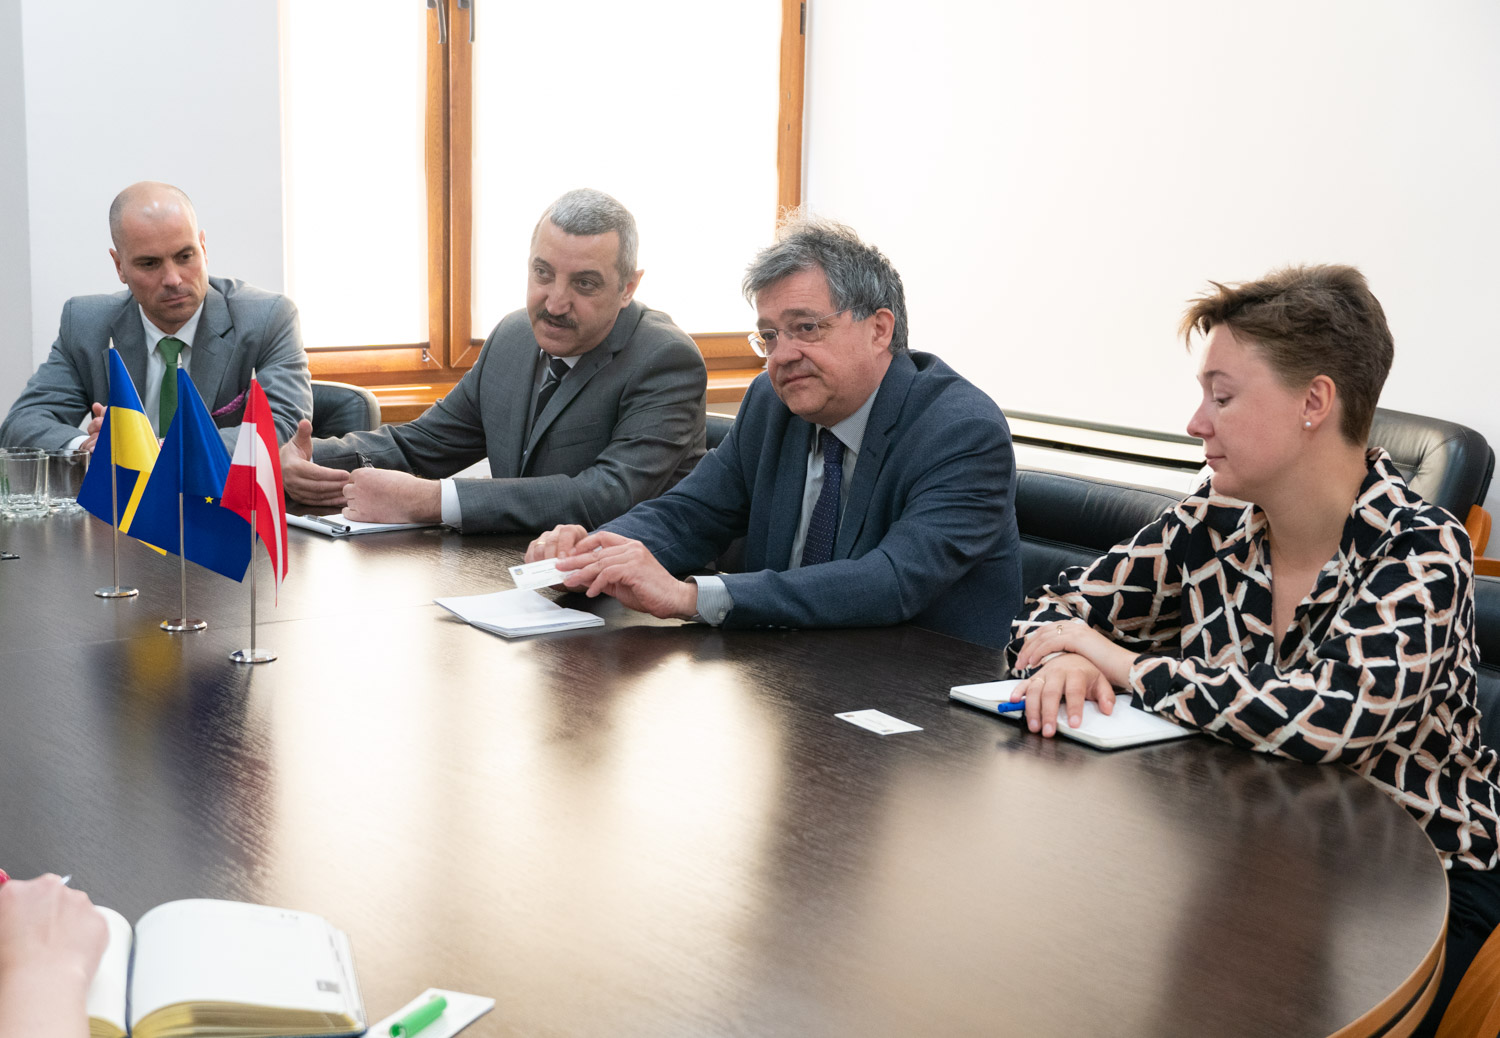 Міський голова Ужгорода зустрівся учора із Послом, головою кризової групи Посольства Австрії в Україні Флоріаном Раунігом.

